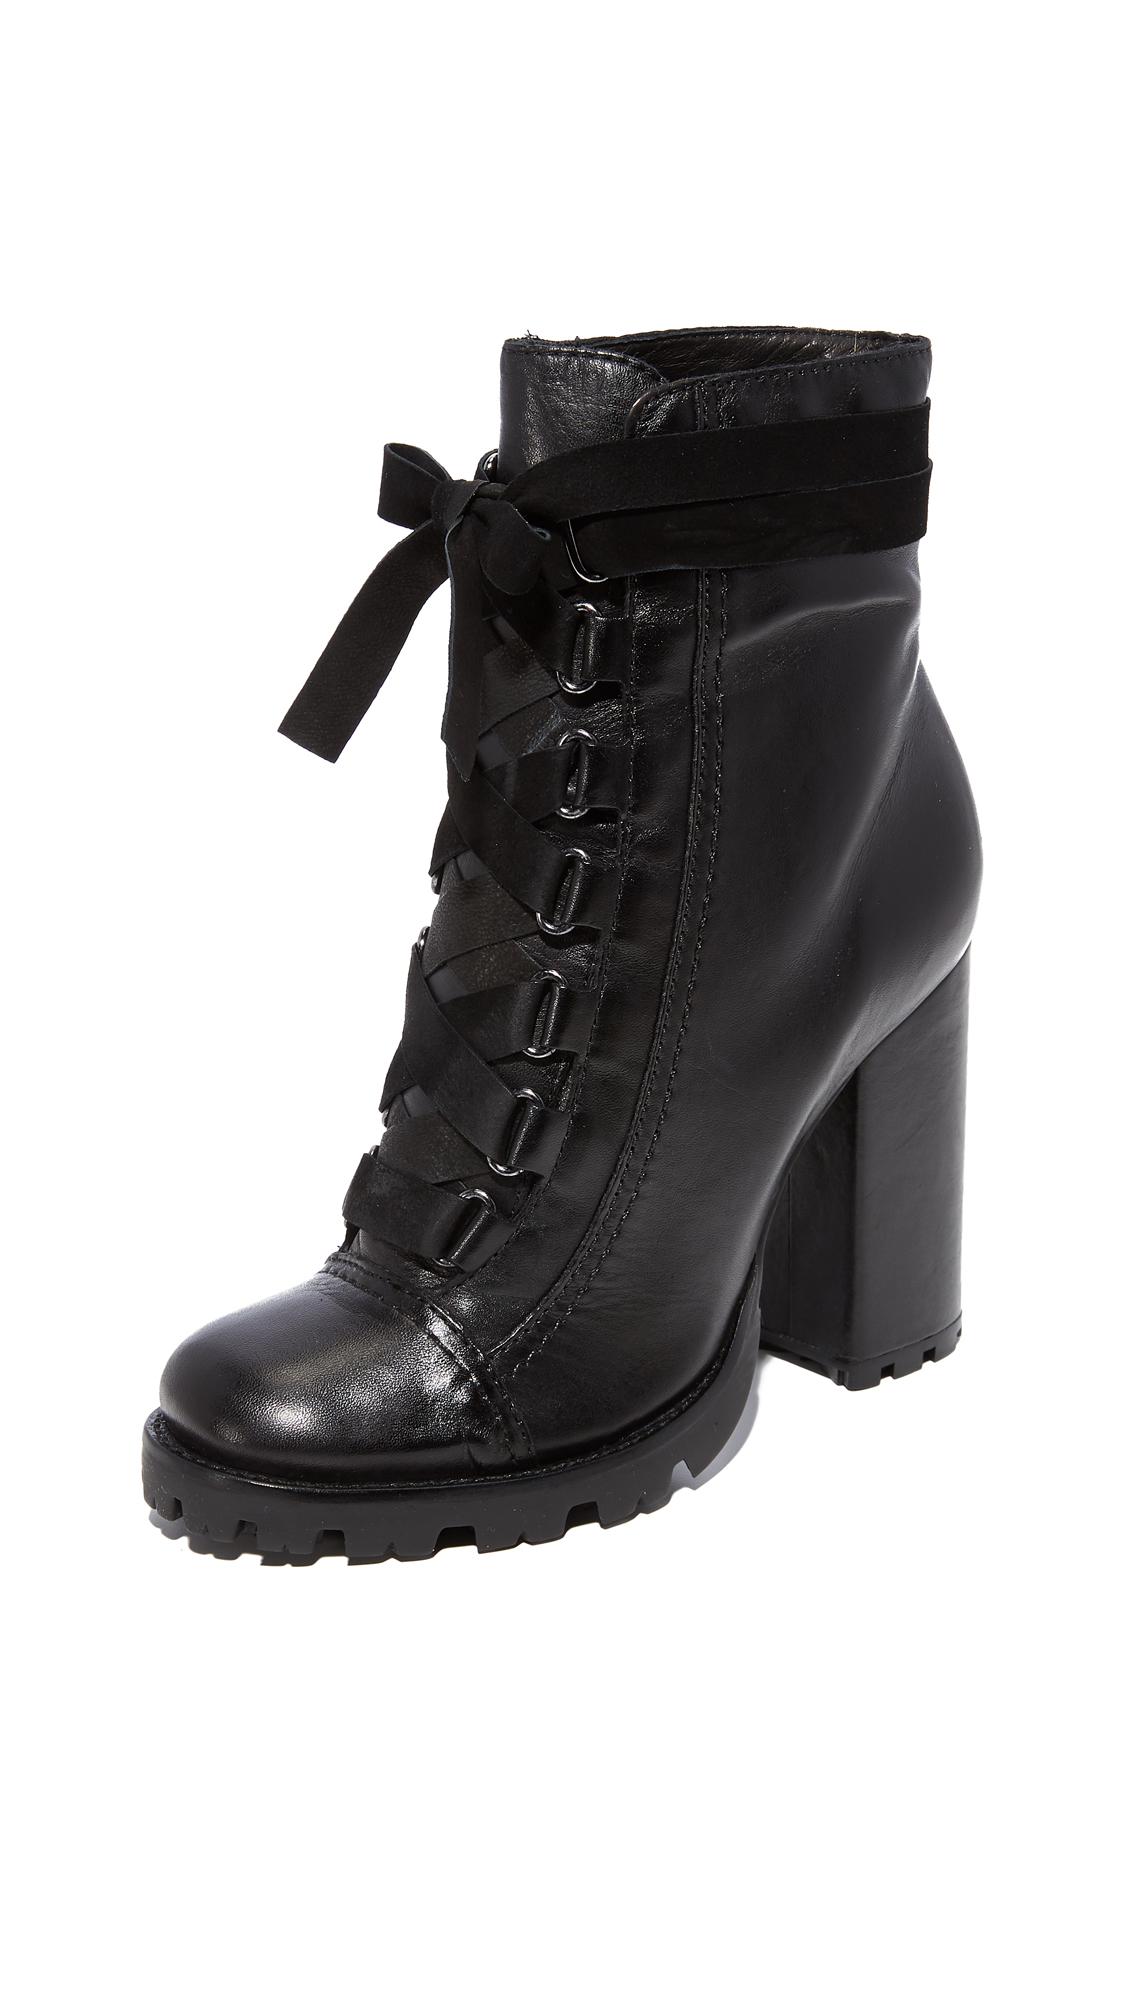 Schutz Leather Lisie Bow Platform Boots in Black - Lyst